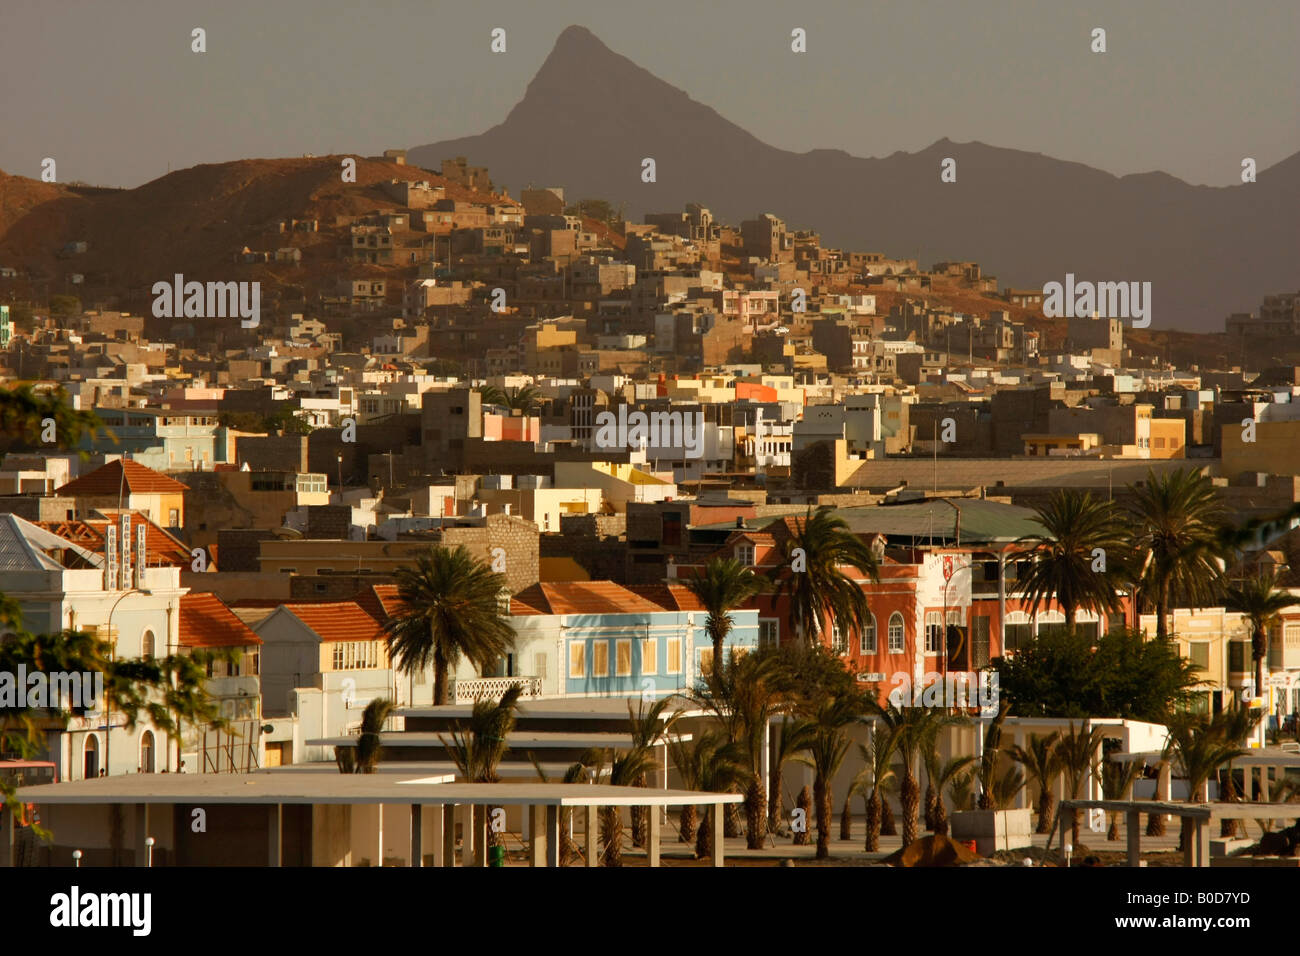 Vieille ville de Mindelo sur l'île de Sao Vicente Cap Vert Afrique Banque D'Images